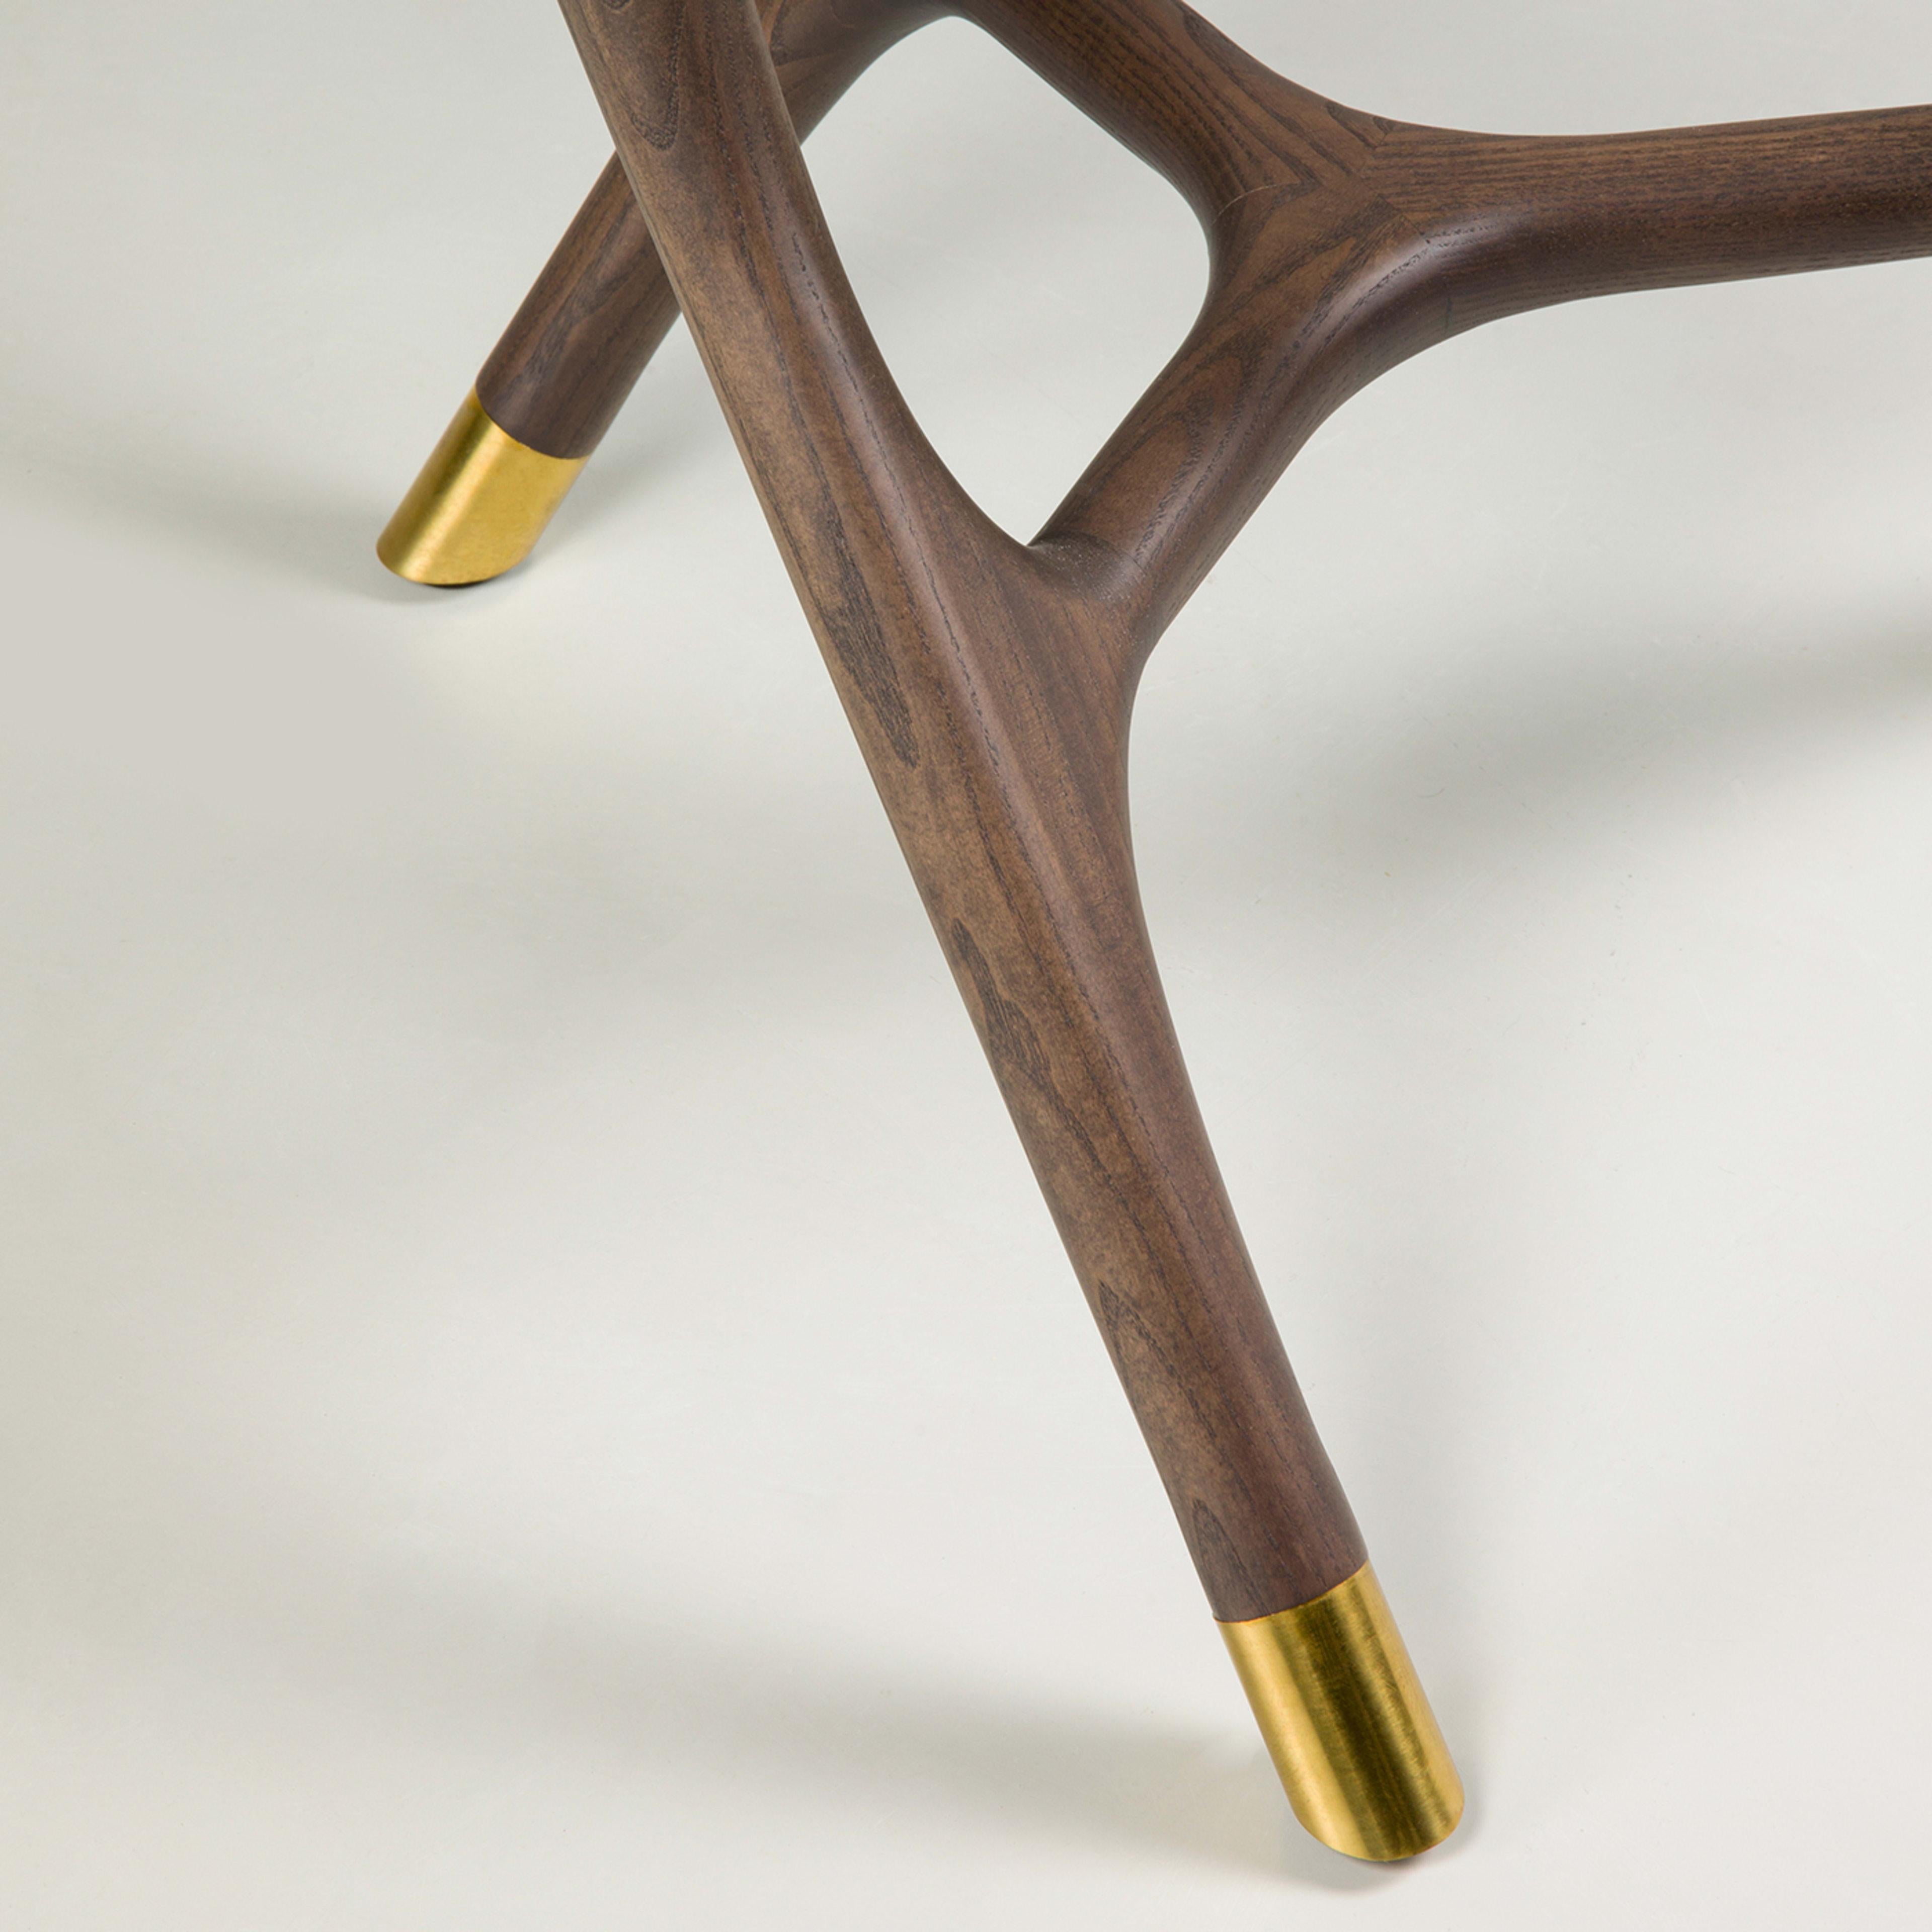 Dieser exquisit gefertigte kleine Tisch besticht durch seinen Retro-Chic. Die geschnitzten Tischbeine aus Eschenholz im Decò-Stil mit Messingfüßen, die die Glasplatte mit 120 cm Durchmesser tragen, vervollständigen das Möbelstück. Dieses Stück ist